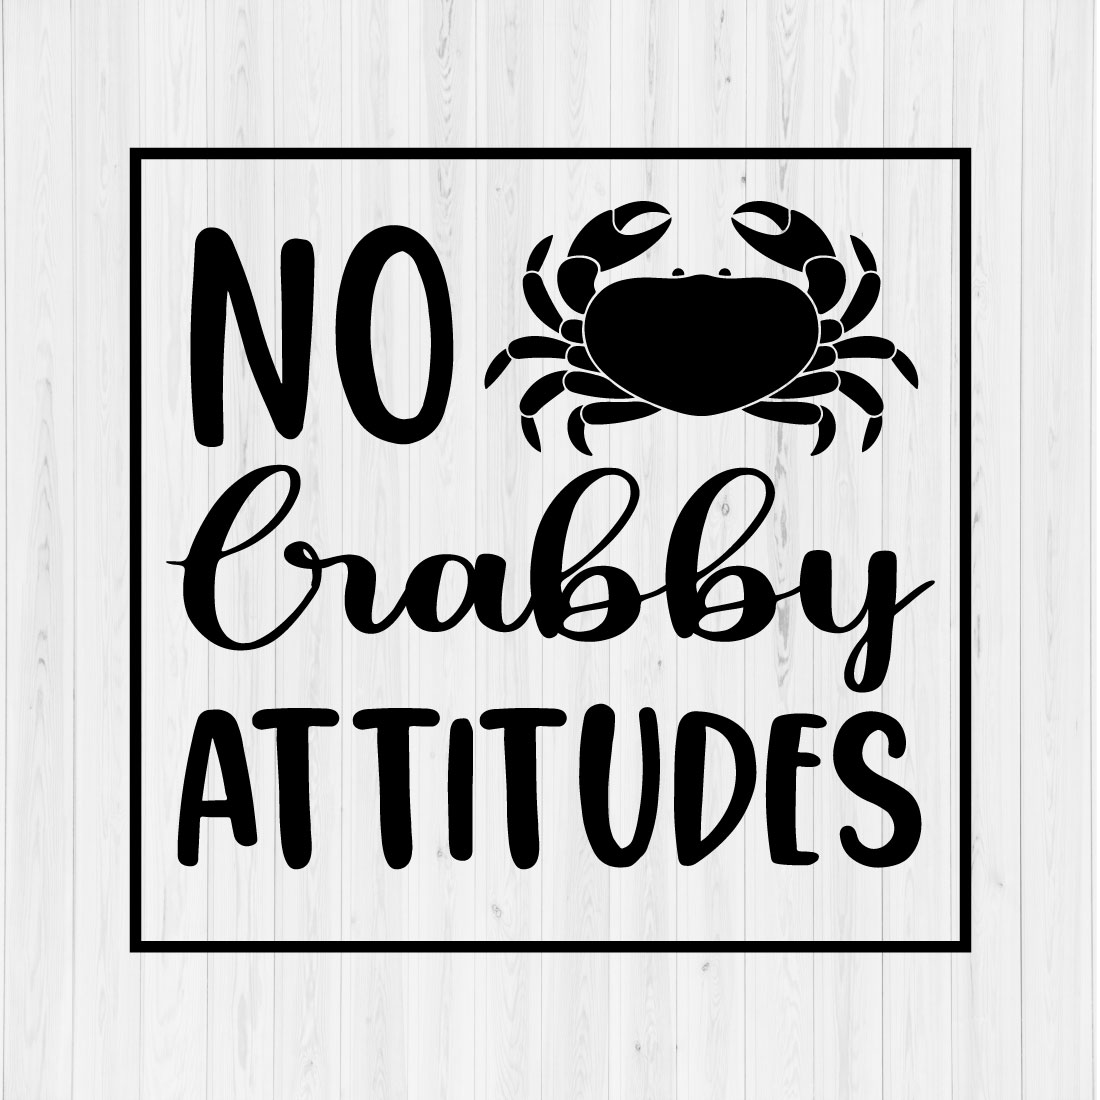 No Crabby Attitudes cover image.